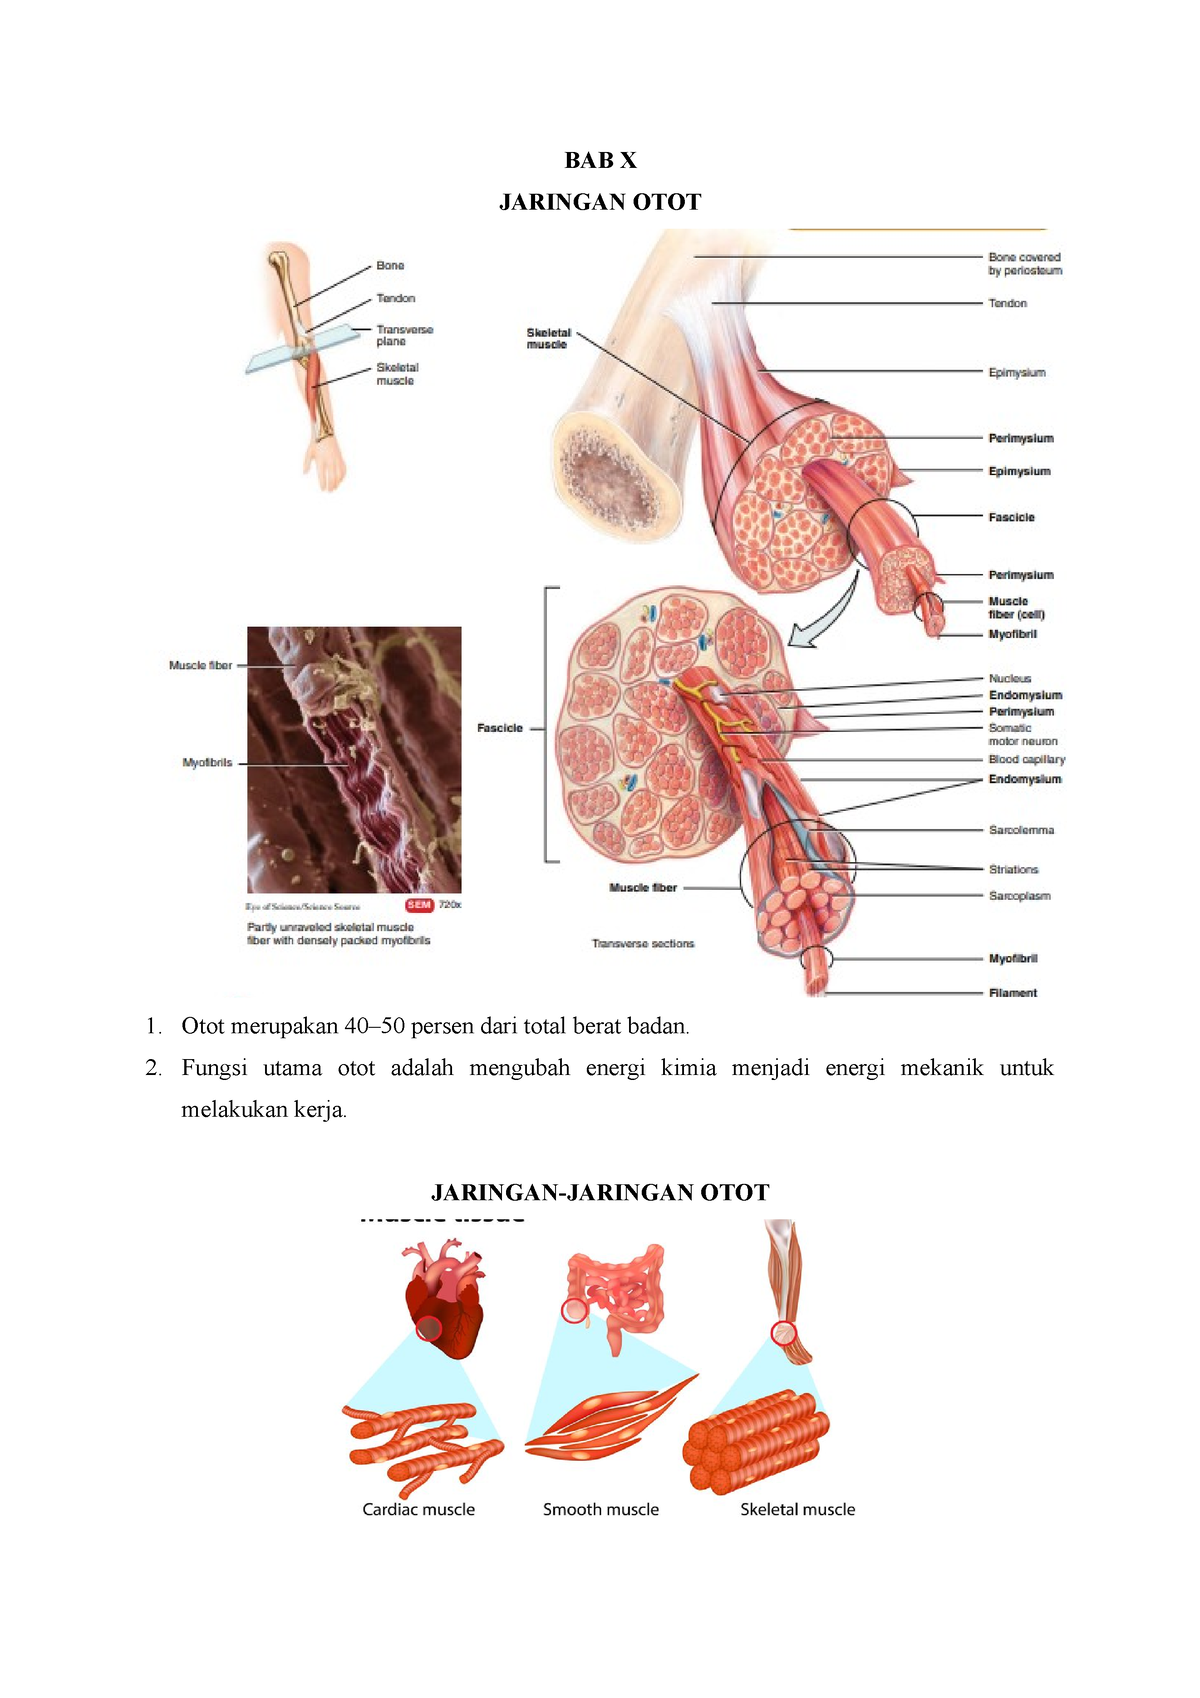 Anatomi Kedokteran Jaringan Otot Bab X Jaringan Otot Otot Merupakan